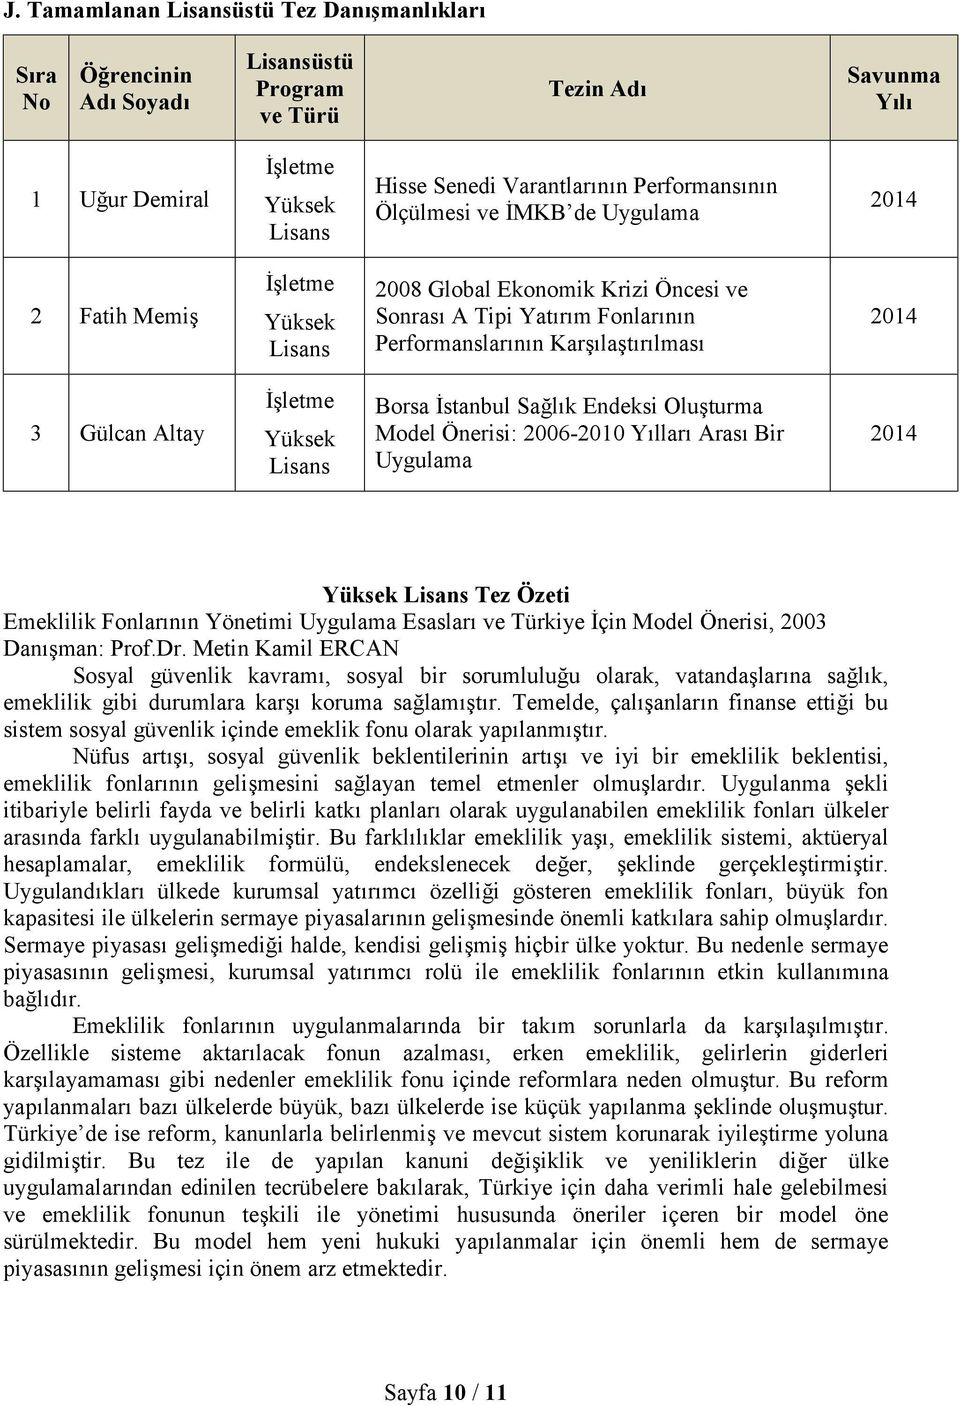 Gülcan Altay İşletme Yüksek Lisans Borsa İstanbul Sağlık Endeksi Oluşturma Model Önerisi: 2006-2010 Yılları Arası Bir Uygulama 2014 Yüksek Lisans Tez Özeti Emeklilik Fonlarının Yönetimi Uygulama